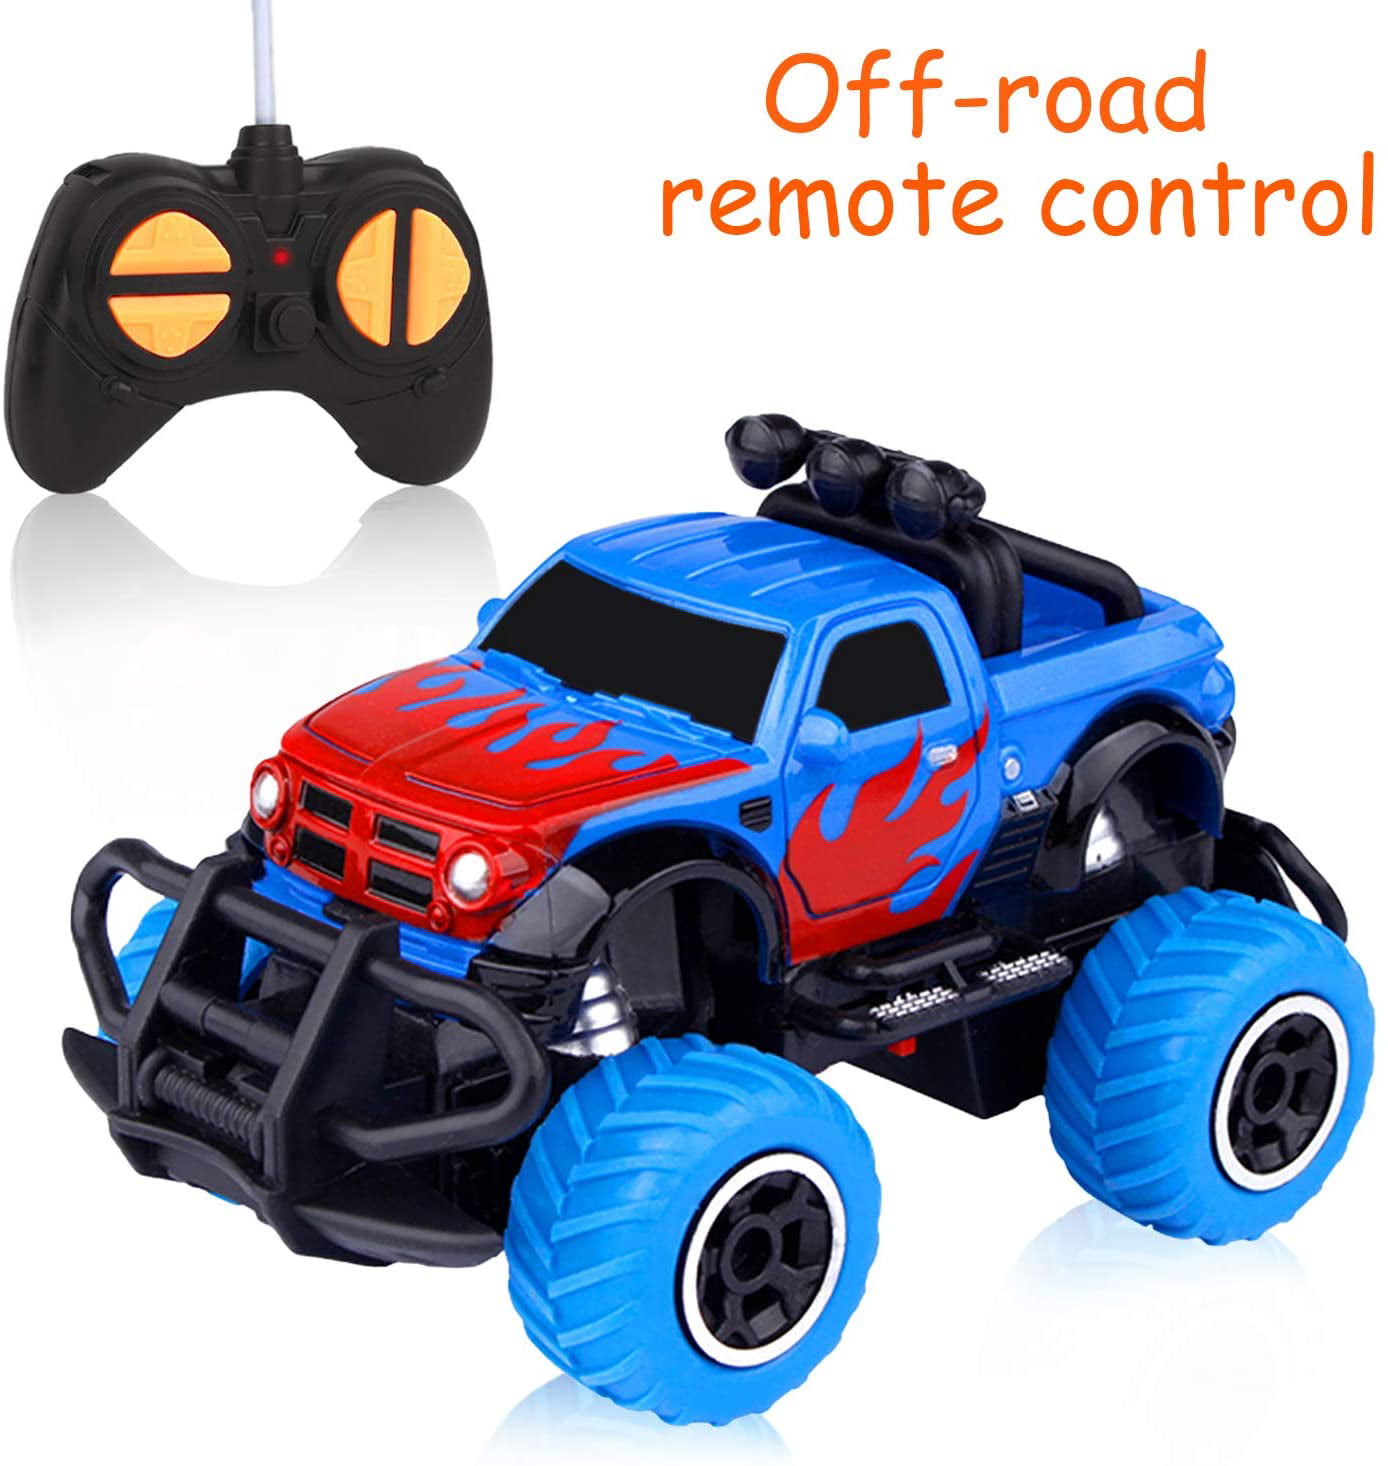 small remote control cars